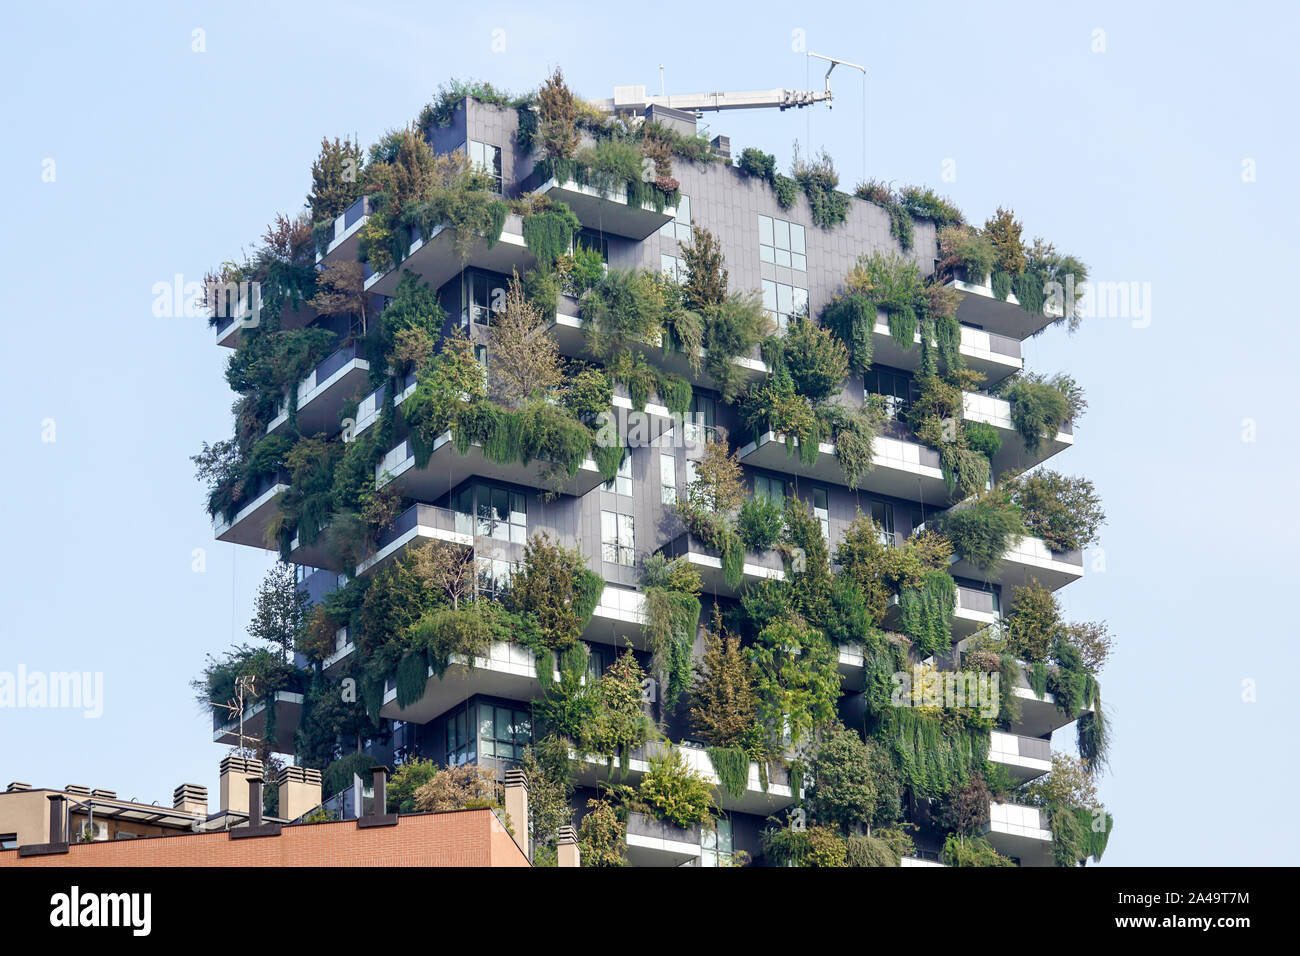 Mailand Italien - Juli 15, 2016: Zwei Wohntürme mit Bäumen und Büschen auf große Balkone genannt Bosco Verticale im Zentrum von Mailand zu unterstützen Stockfoto